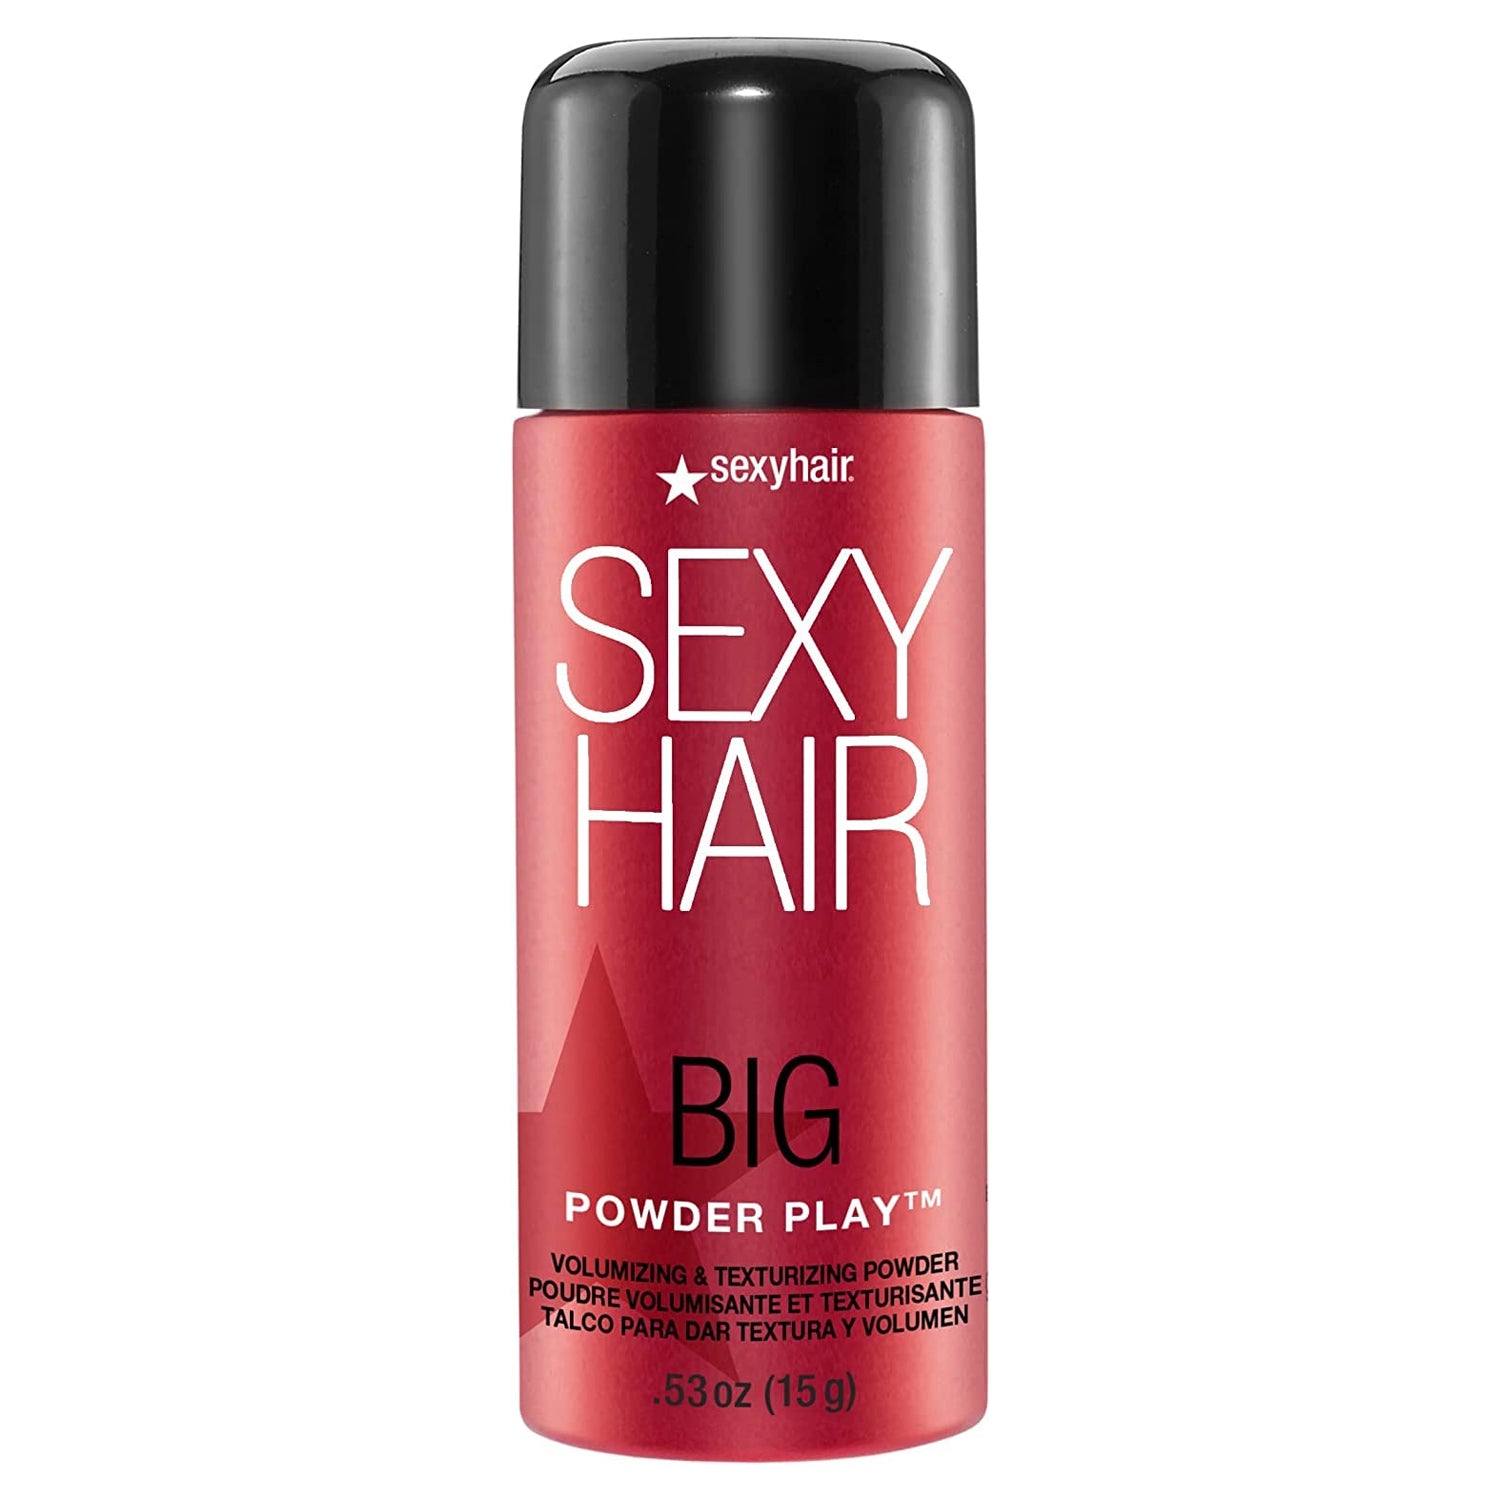 Big Sexy Hair Powder Play Volumizing & Texturizing Powder 0.53oz/15g